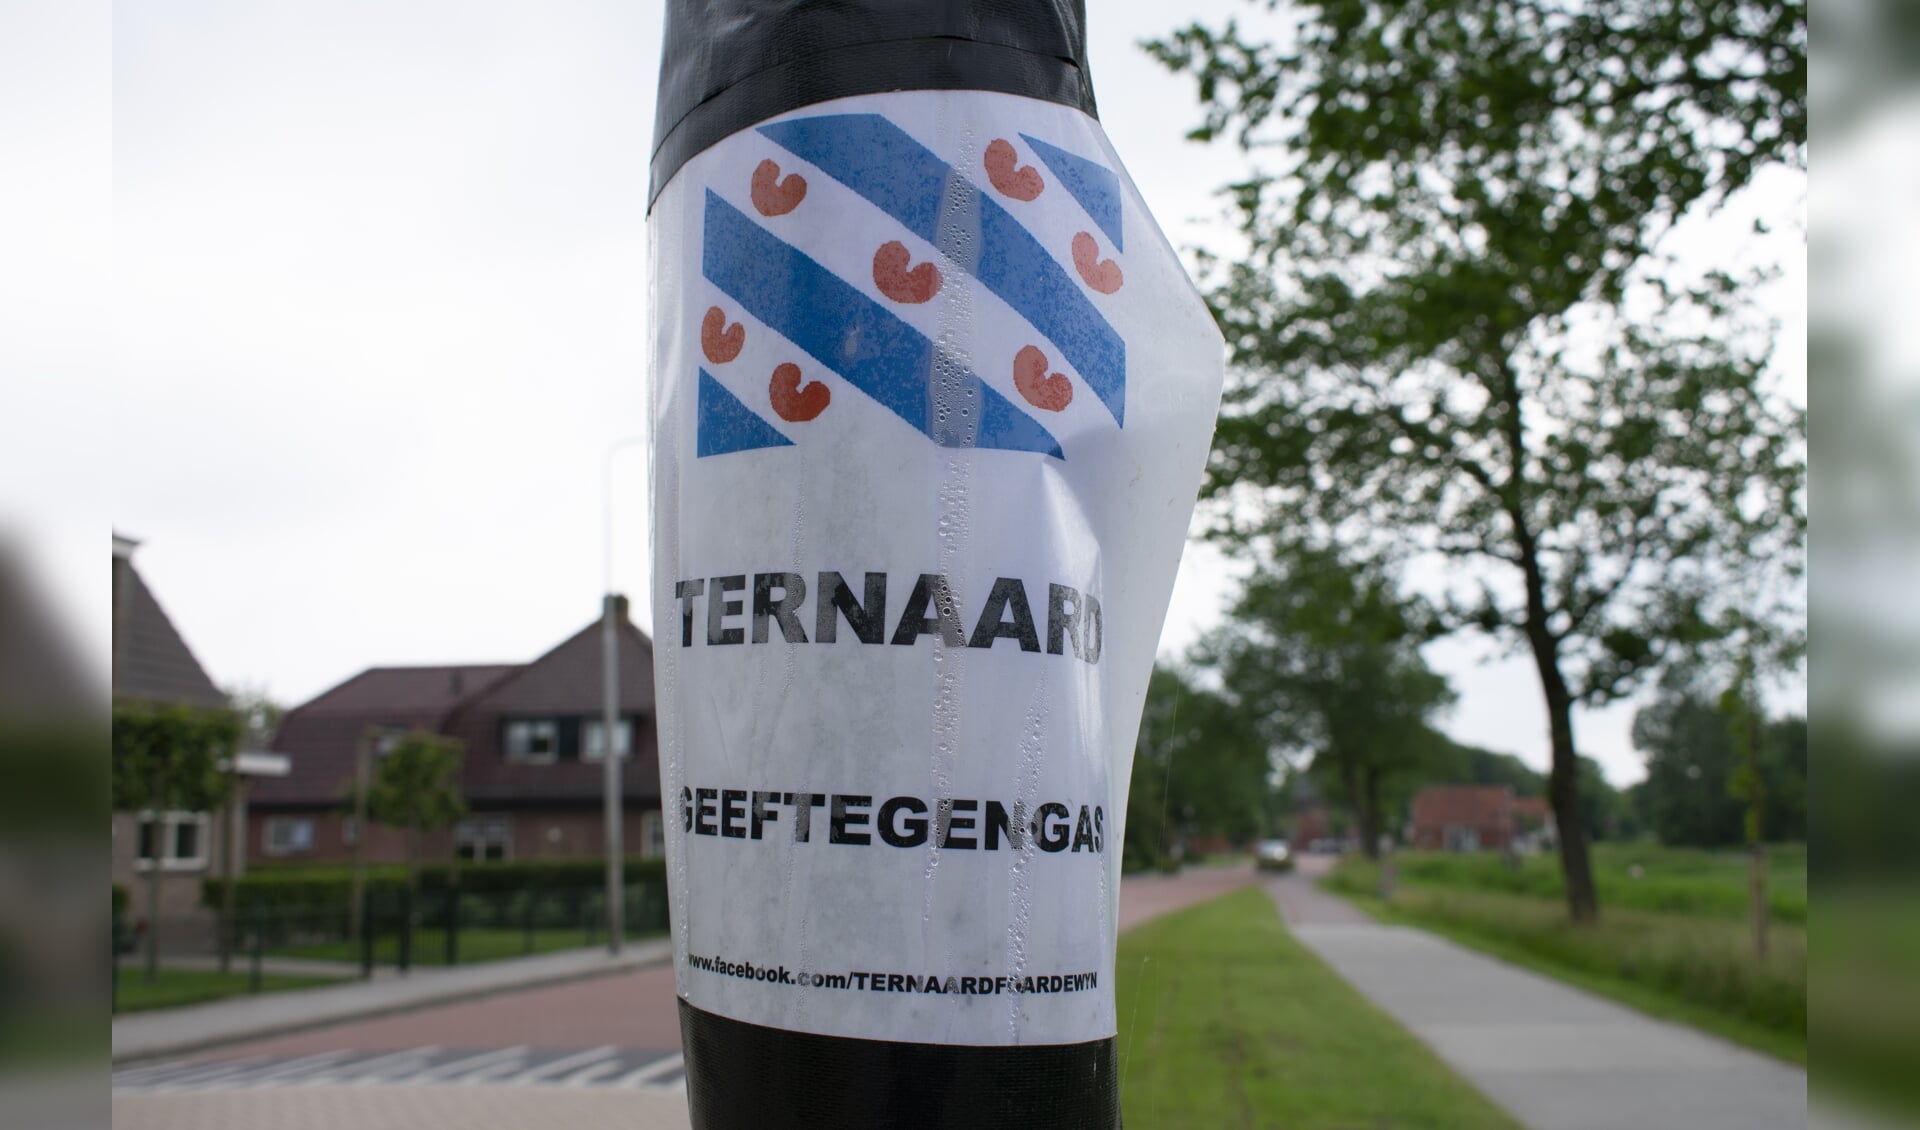 Het dorp Ternaard is net als de Friese overheden tegen nieuwe gaswinning.